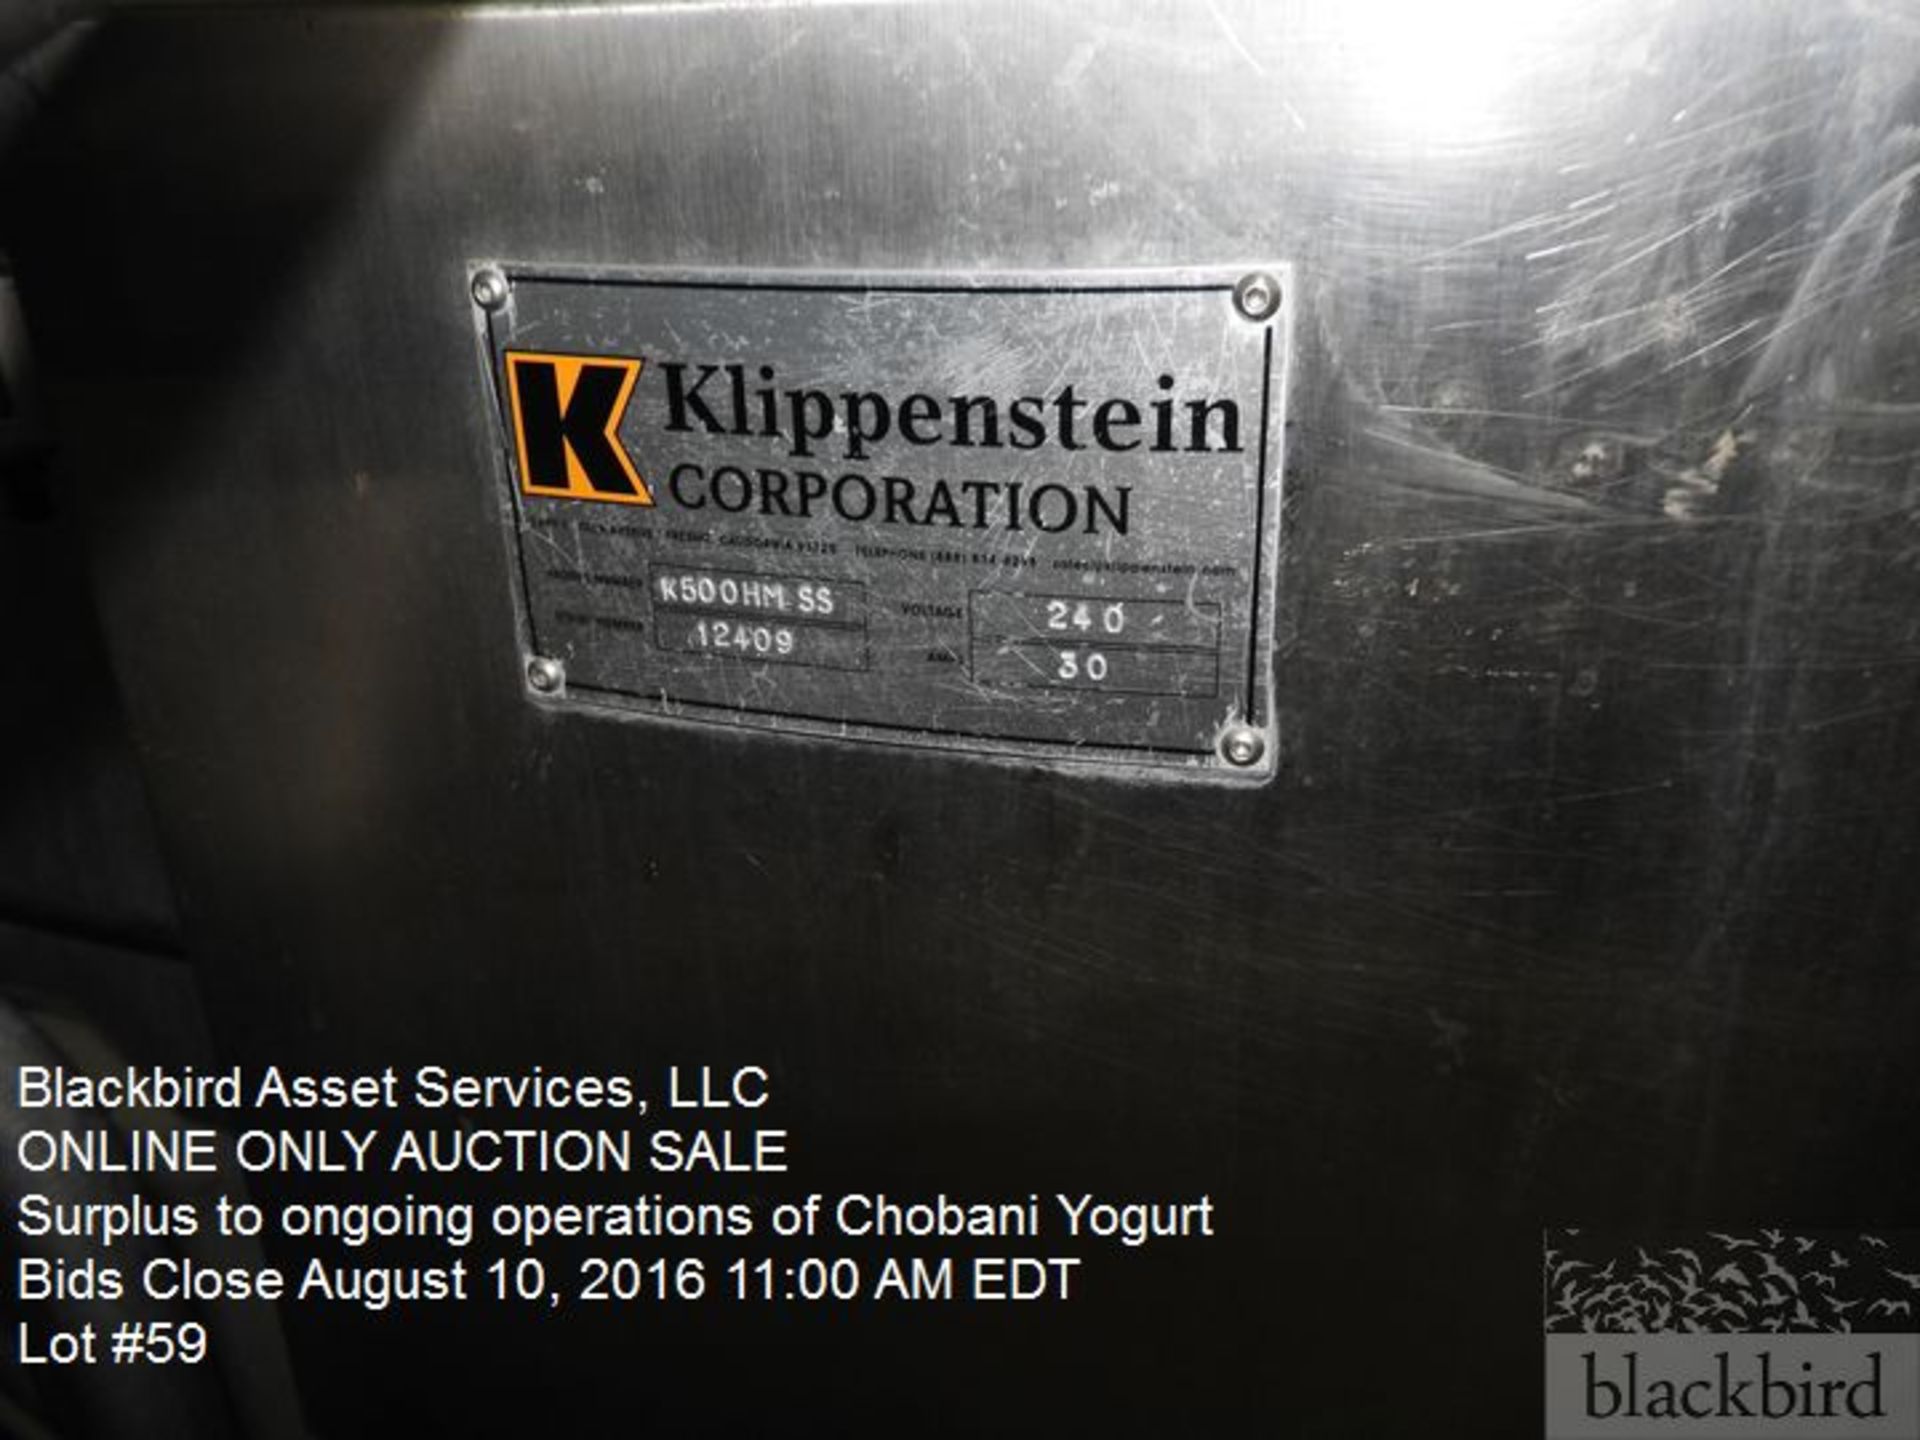 Klippenstein case sealer, model K500HMSS, s/n 12409, stainless steel frame, Nordson hot melt glue